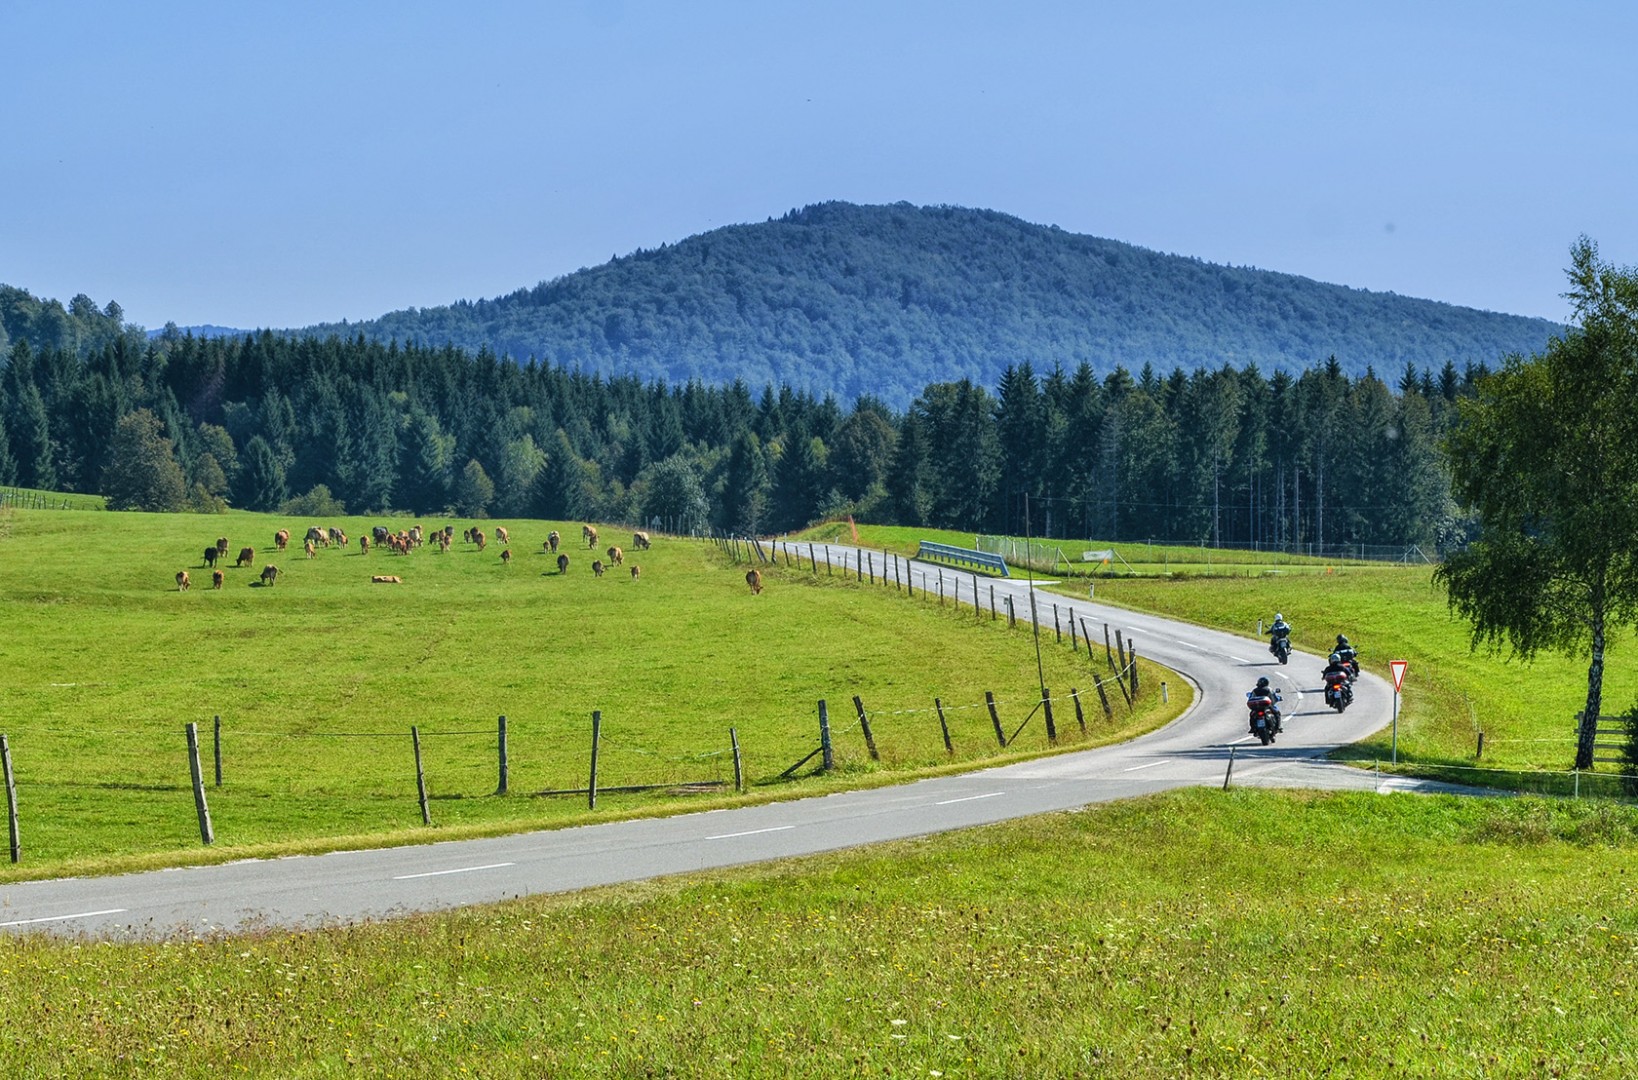 Tour de Motocicleta na Eslovênia